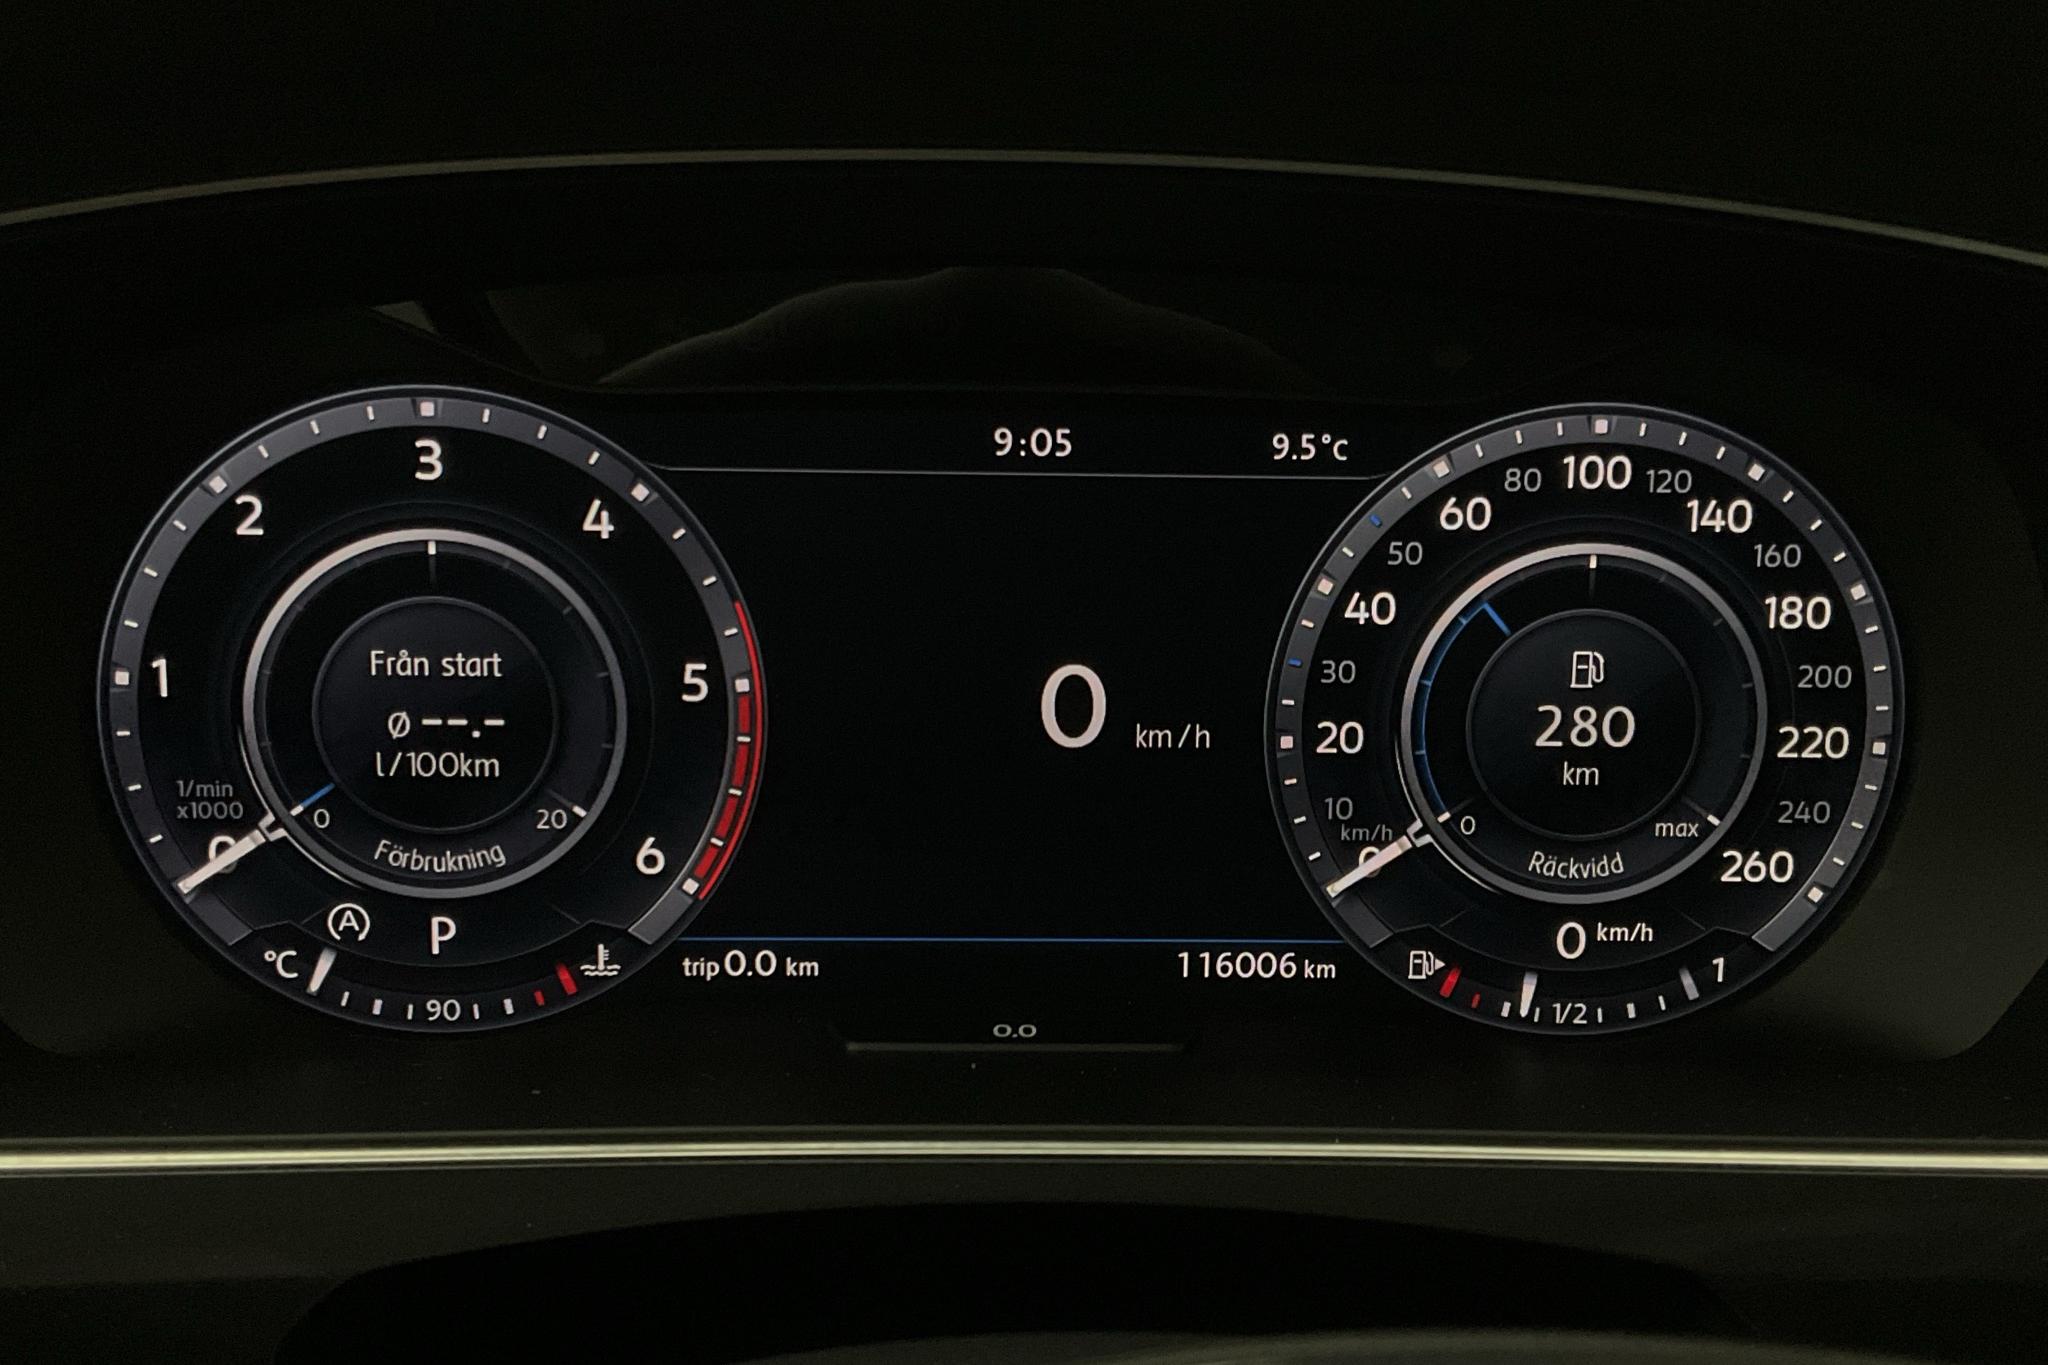 VW Tiguan 2.0 TDI 4MOTION (190hk) - 116 010 km - Automatic - black - 2017